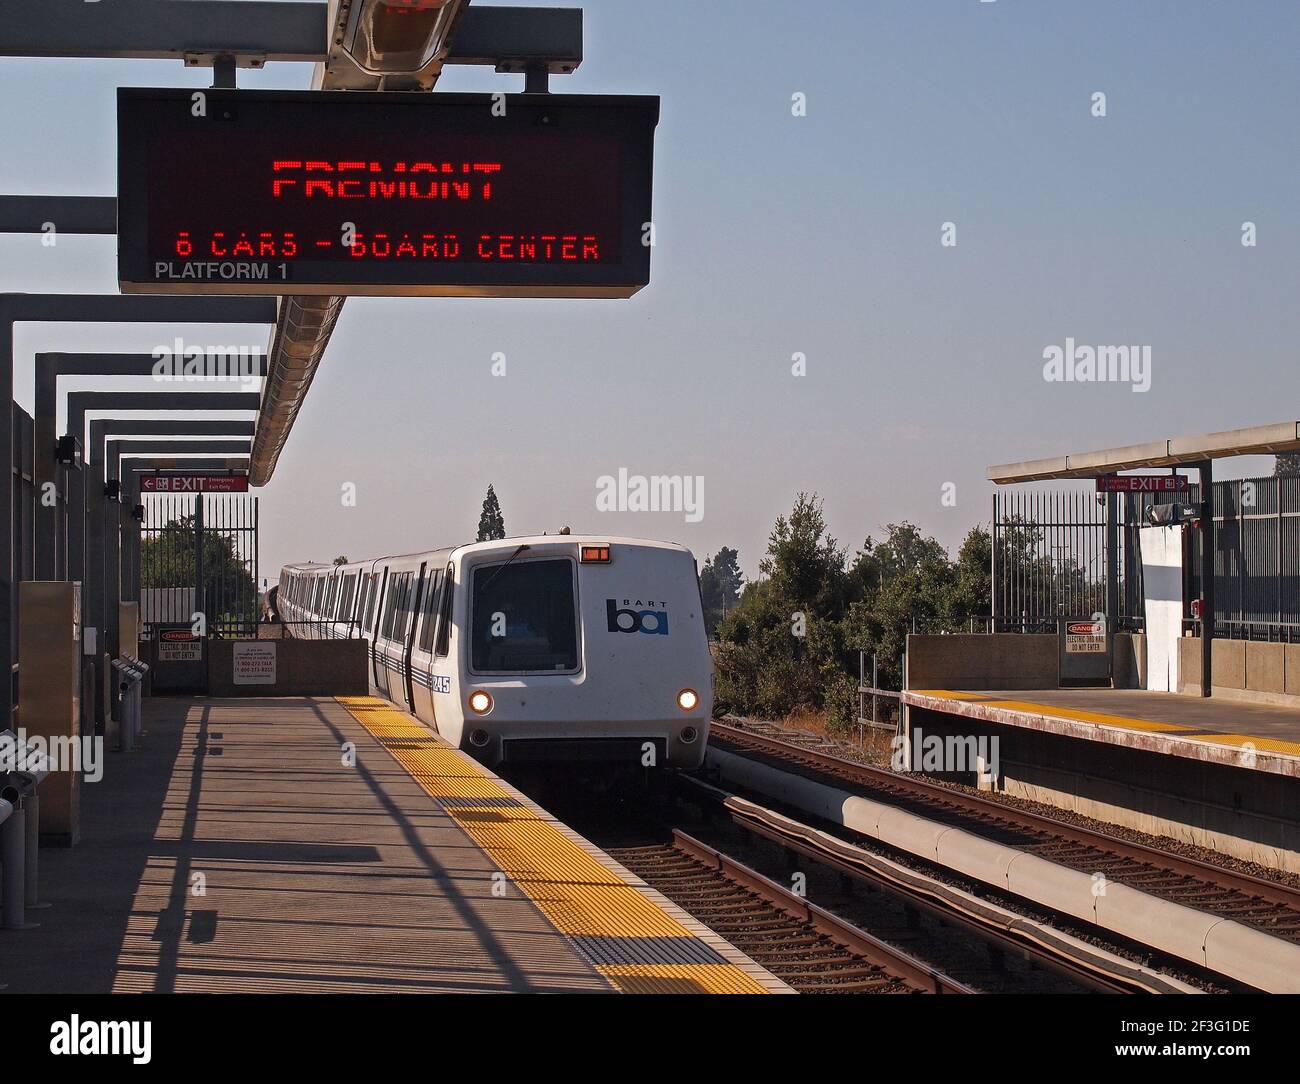 BART treno a Union City Station e segno annuncio l'arrivo del treno Fremont con sei auto, California Foto Stock